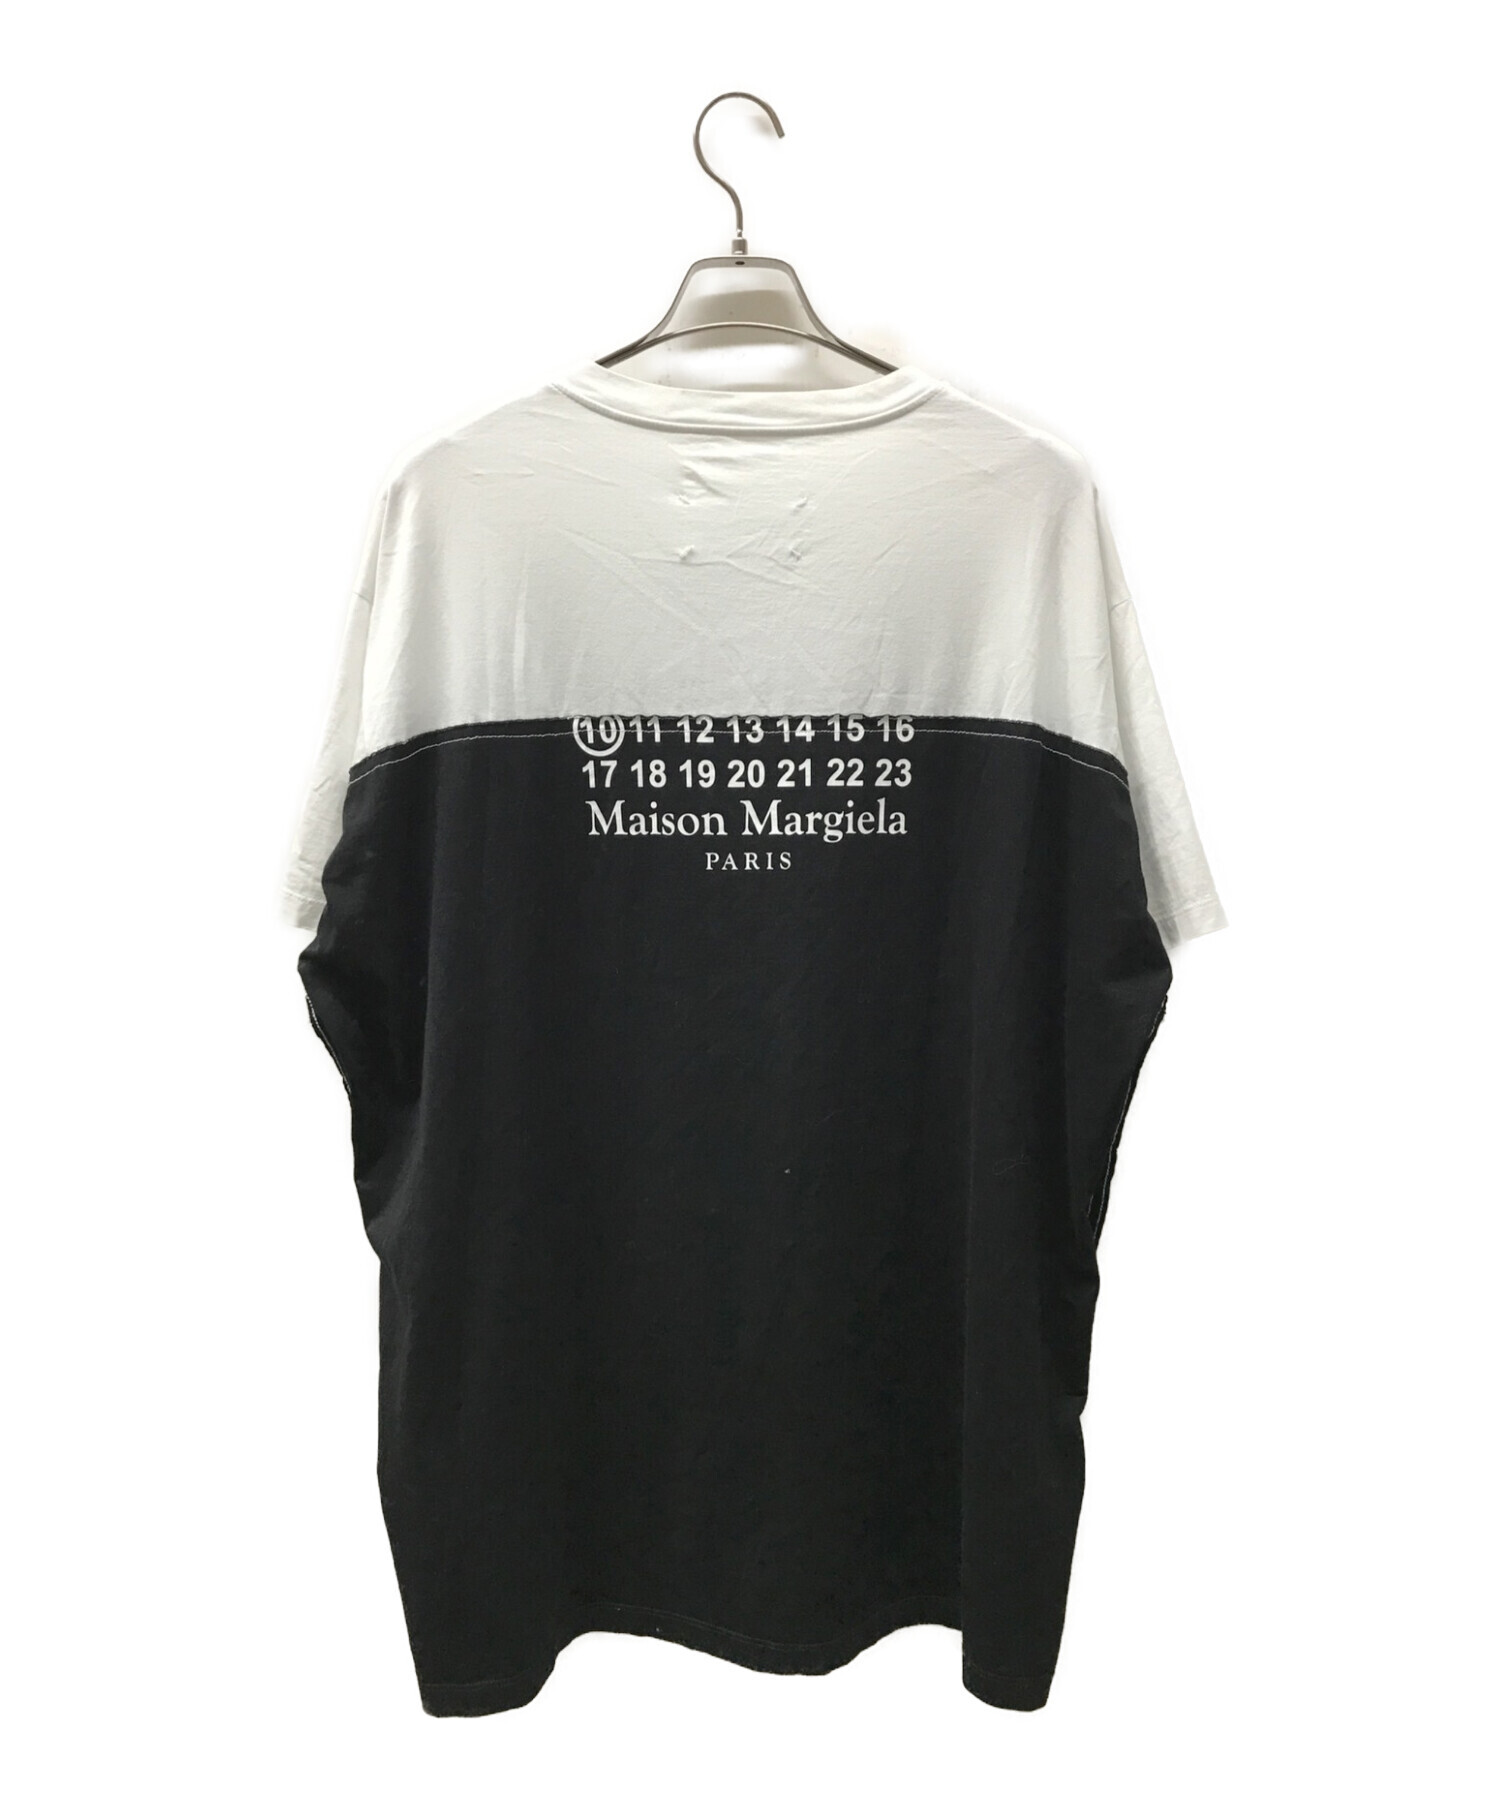 Maison Margiela (メゾンマルジェラ) カレンダーロゴTシャツ ブラック サイズ:48